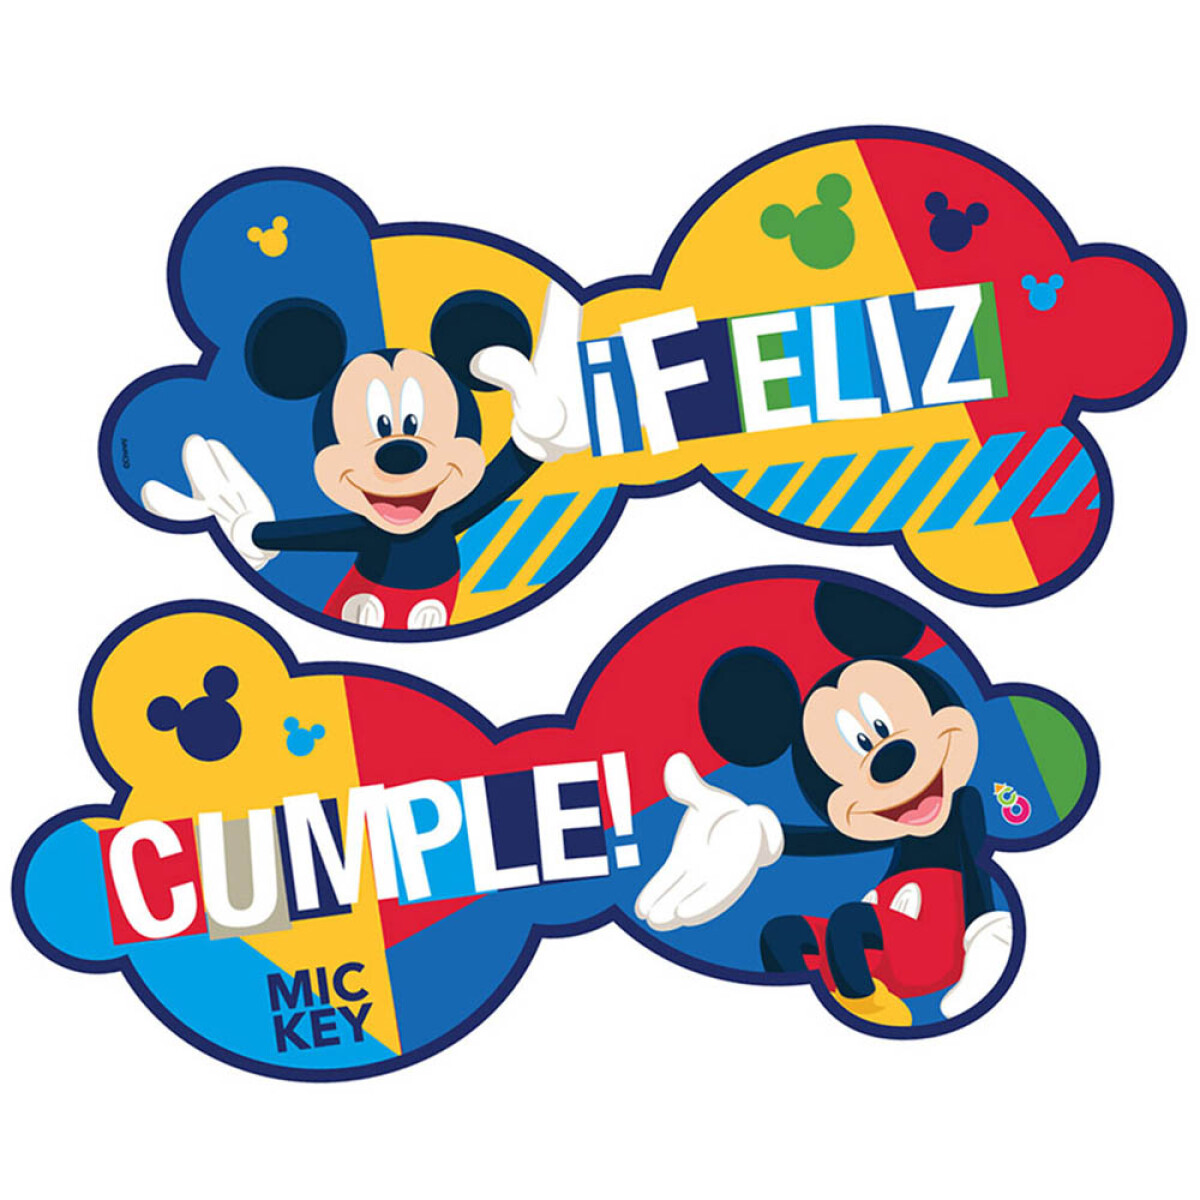 Cotillón Banderín Cartel Feliz Cumple 150 cm - Mickey 